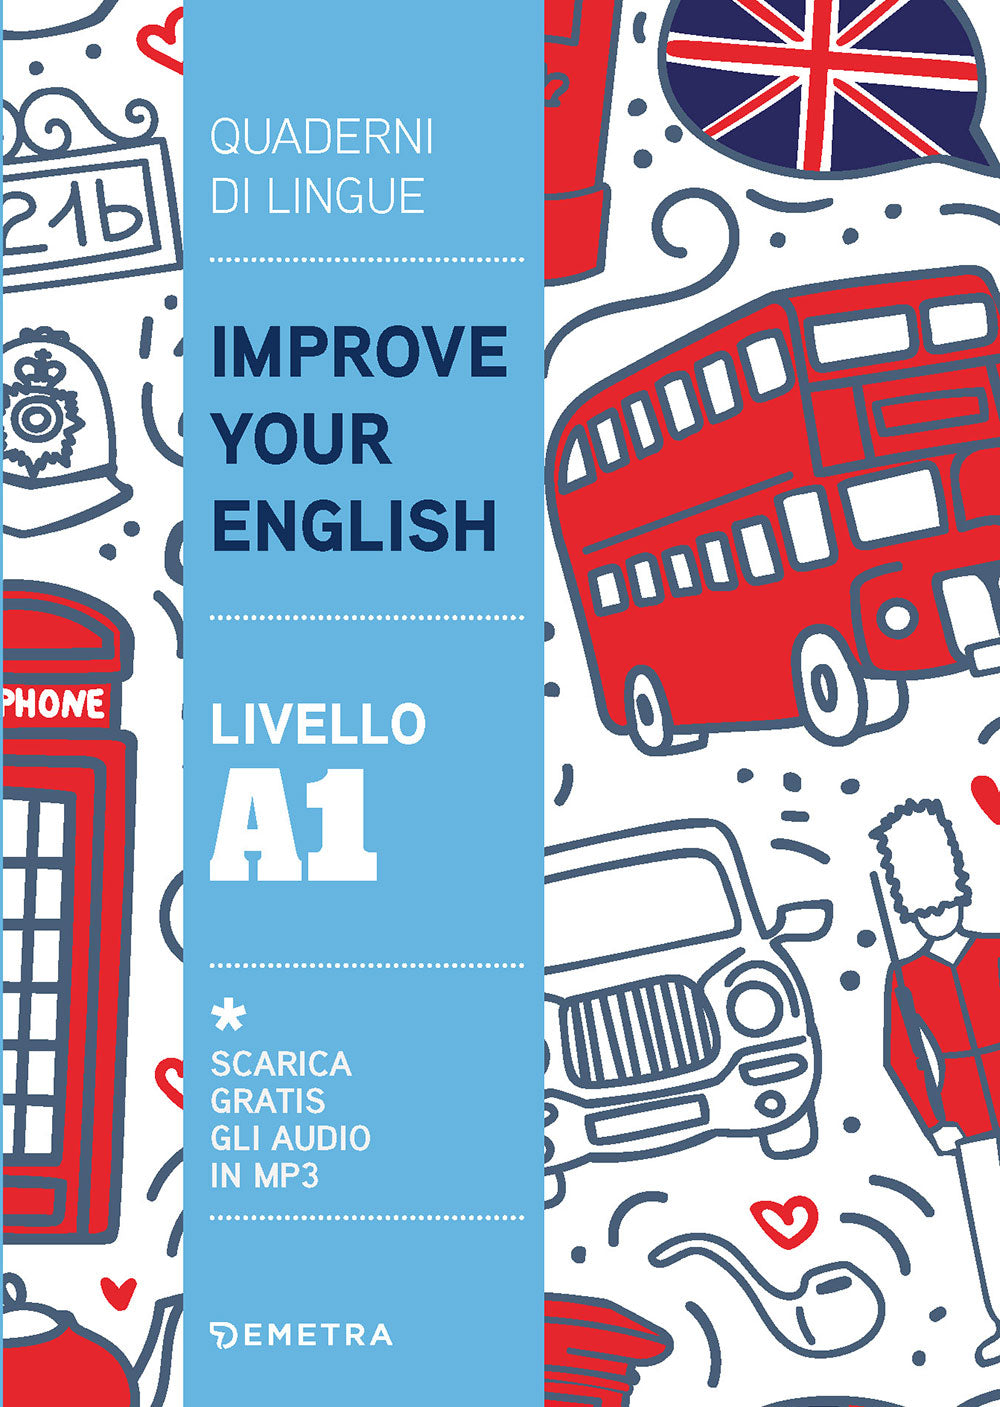 Improve your English livello A1. Scarica gratis gli audio in MP3